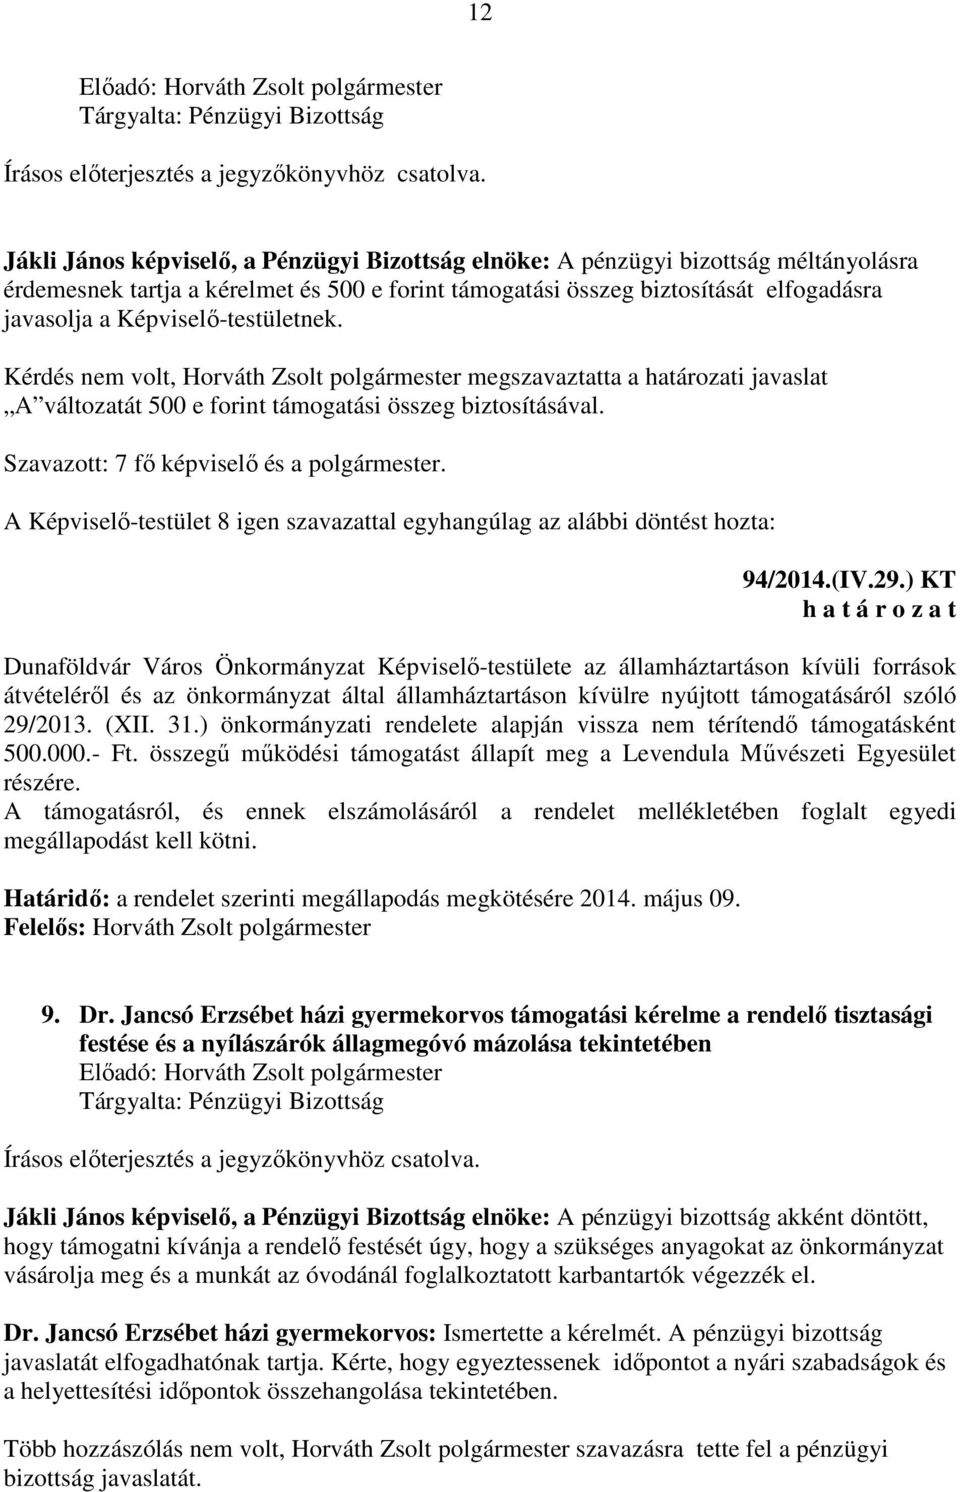 Képviselő-testületnek. Kérdés nem volt, Horváth Zsolt polgármester megszavaztatta a határozati javaslat A változatát 500 e forint támogatási összeg biztosításával.